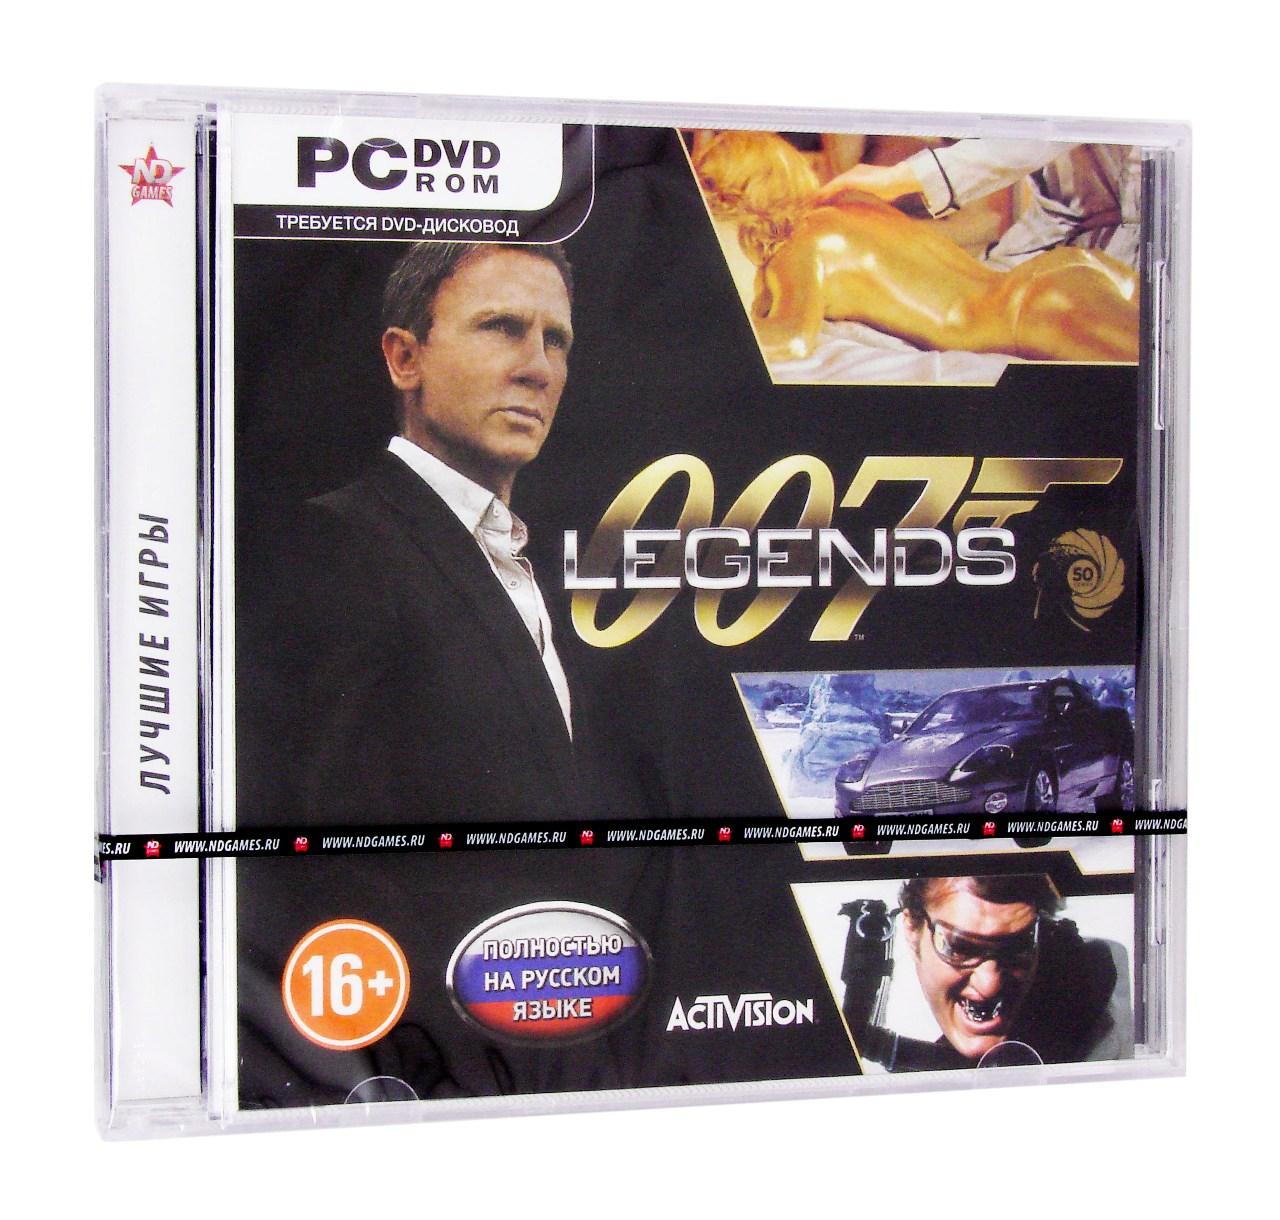 Компьютерный компакт-диск 007 Legends (PC), фирма "Новый диск", 1DVD